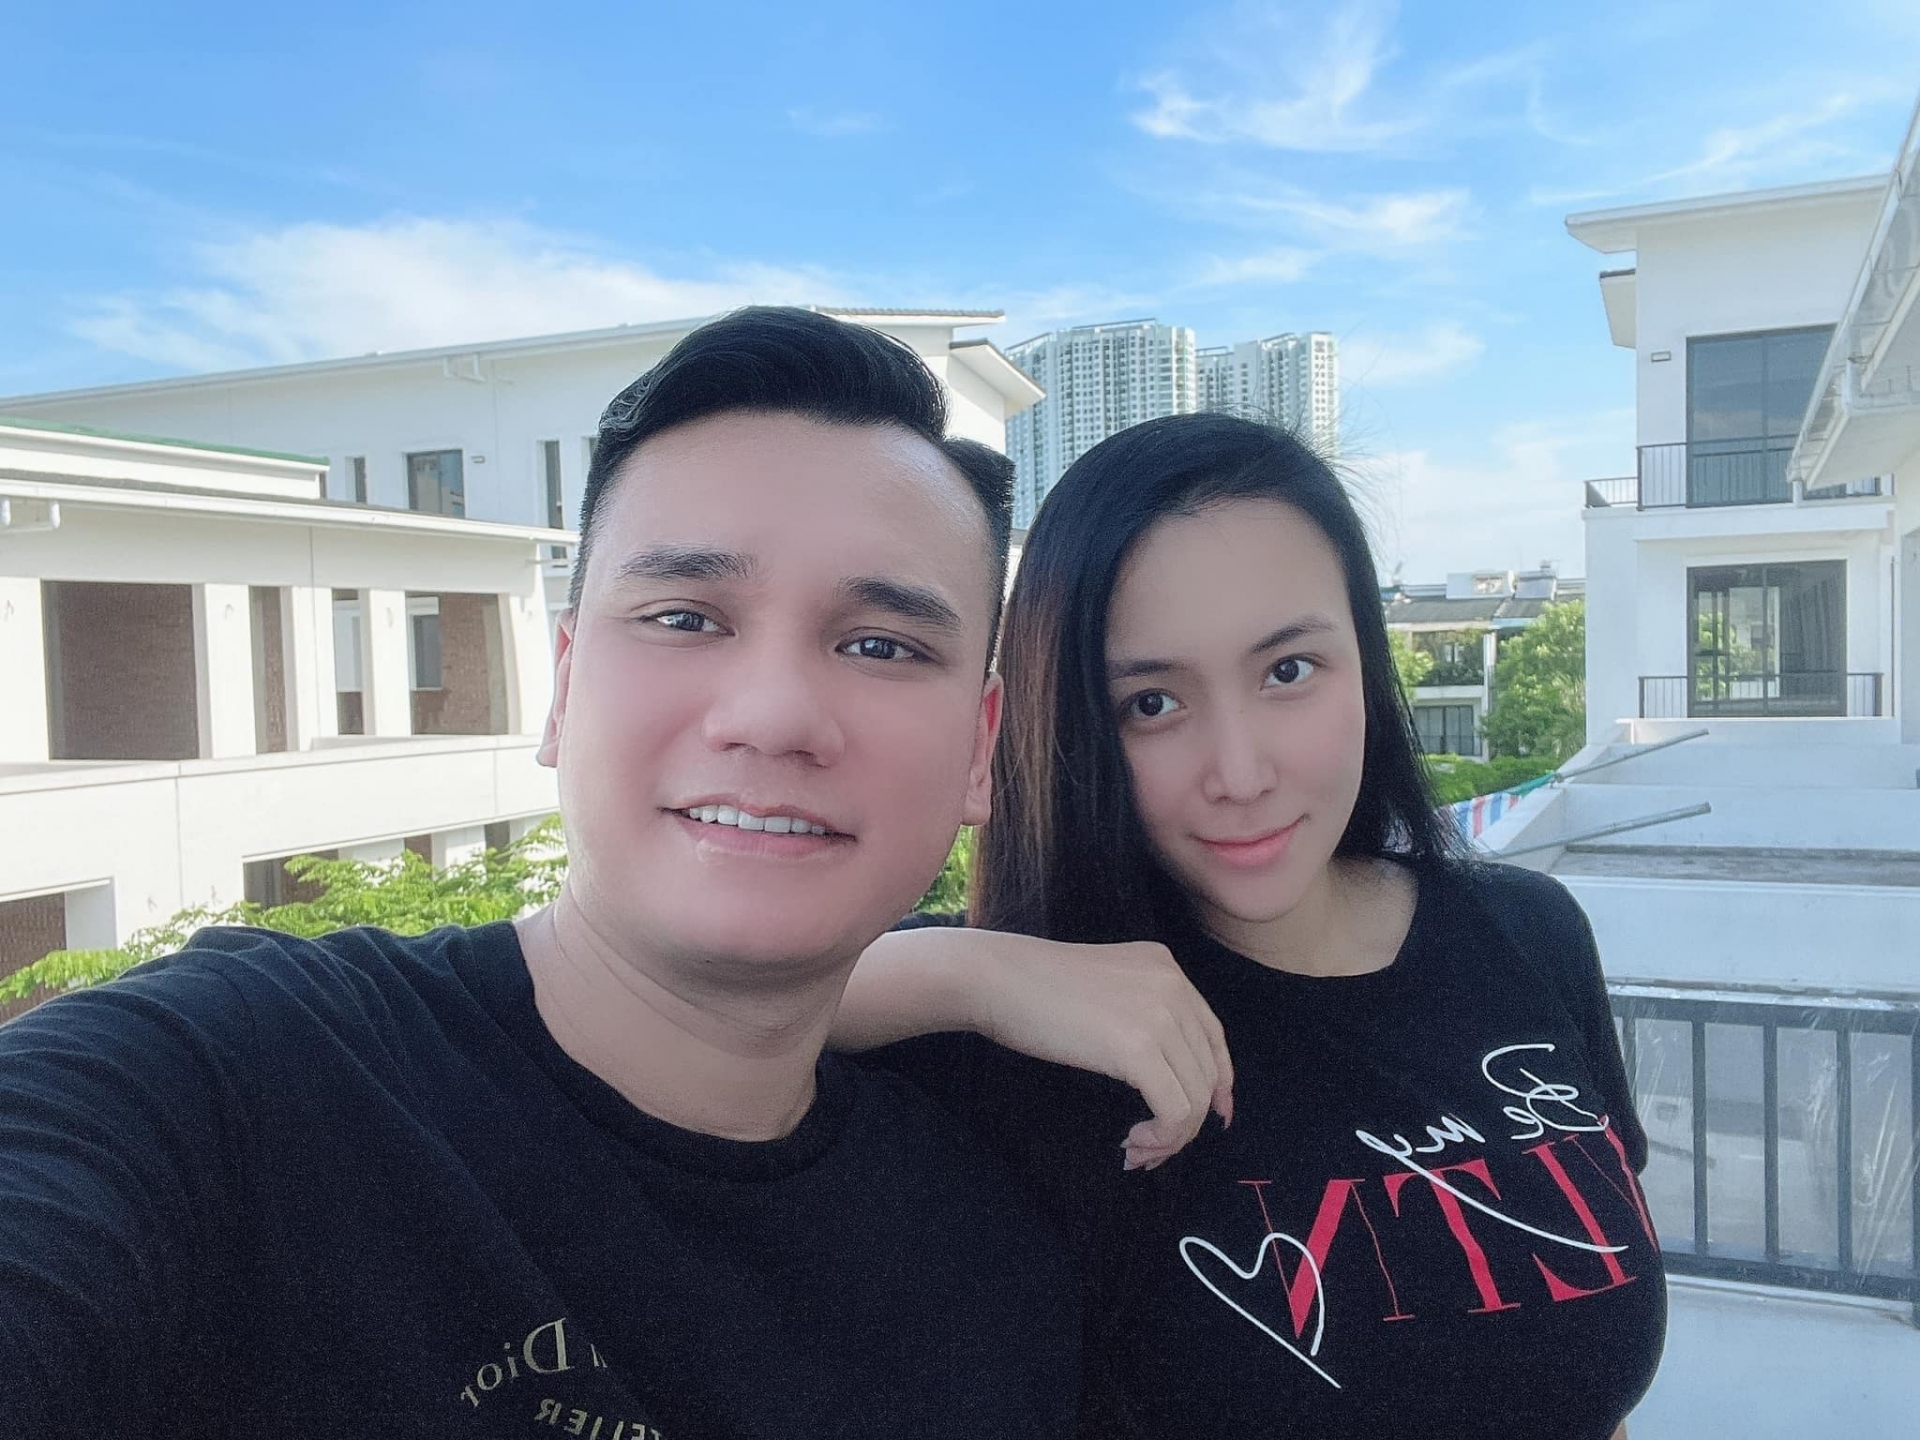 Khắc Việt selfie bên bà xã Thảo Bebe với tâm trạng vui vẻ đón ngày mới. 'Thời tiết quá đẹp cho 1 cuộc tình', anh viết.